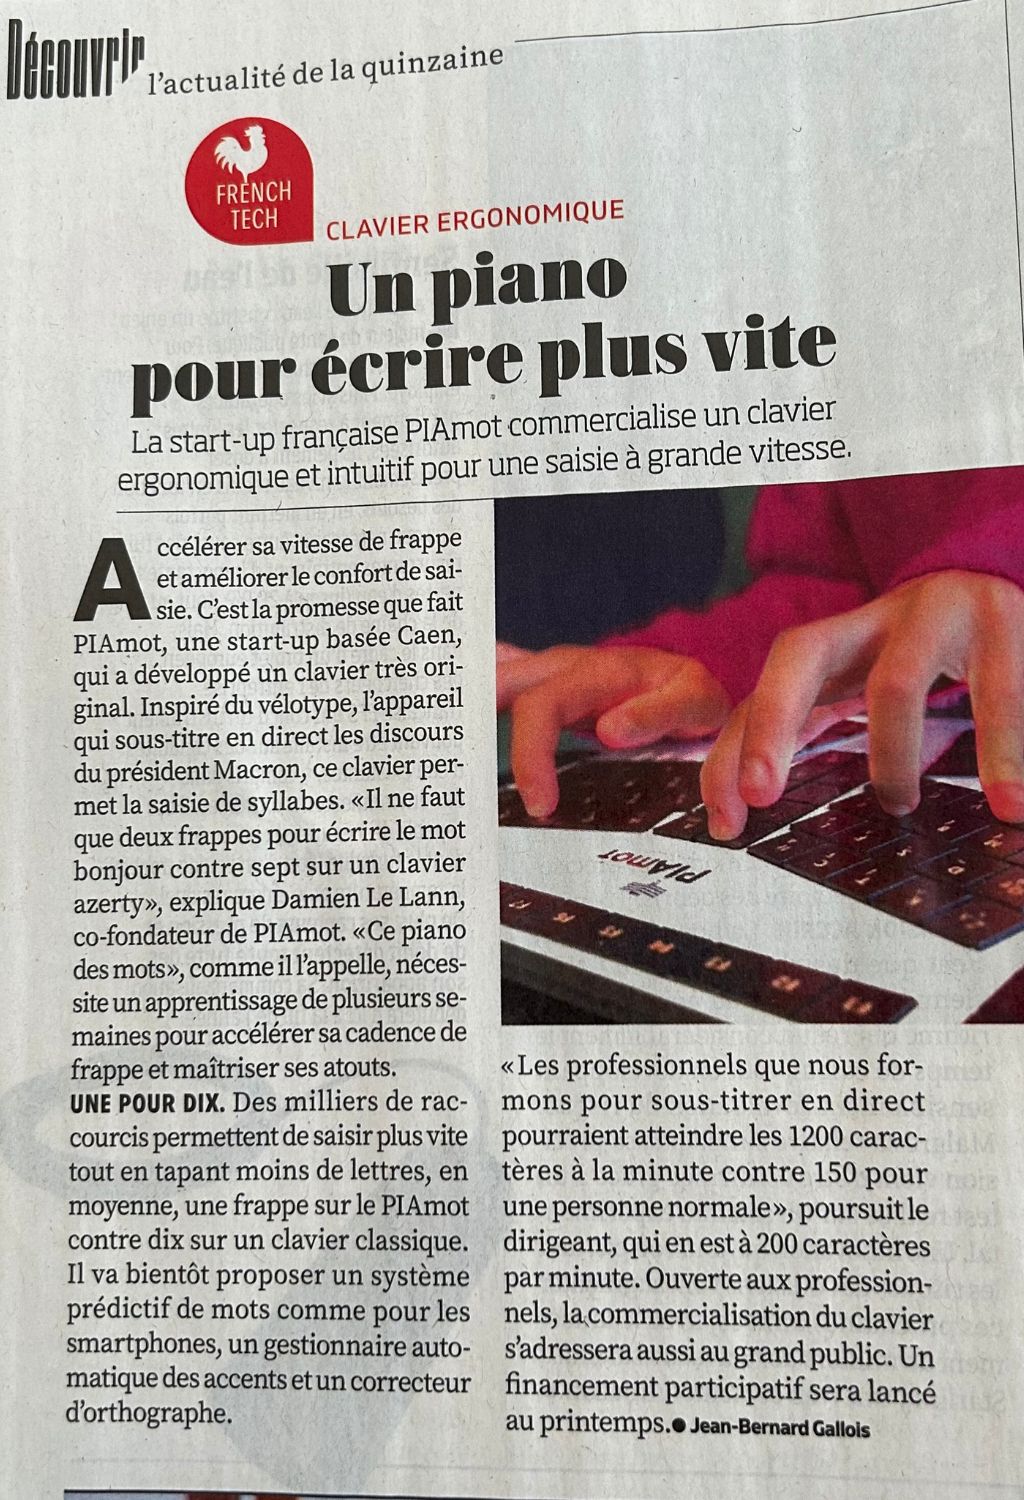 Coupure de l'article du quinzomadaire 01Net « Un piano pour écrire plus vite ».